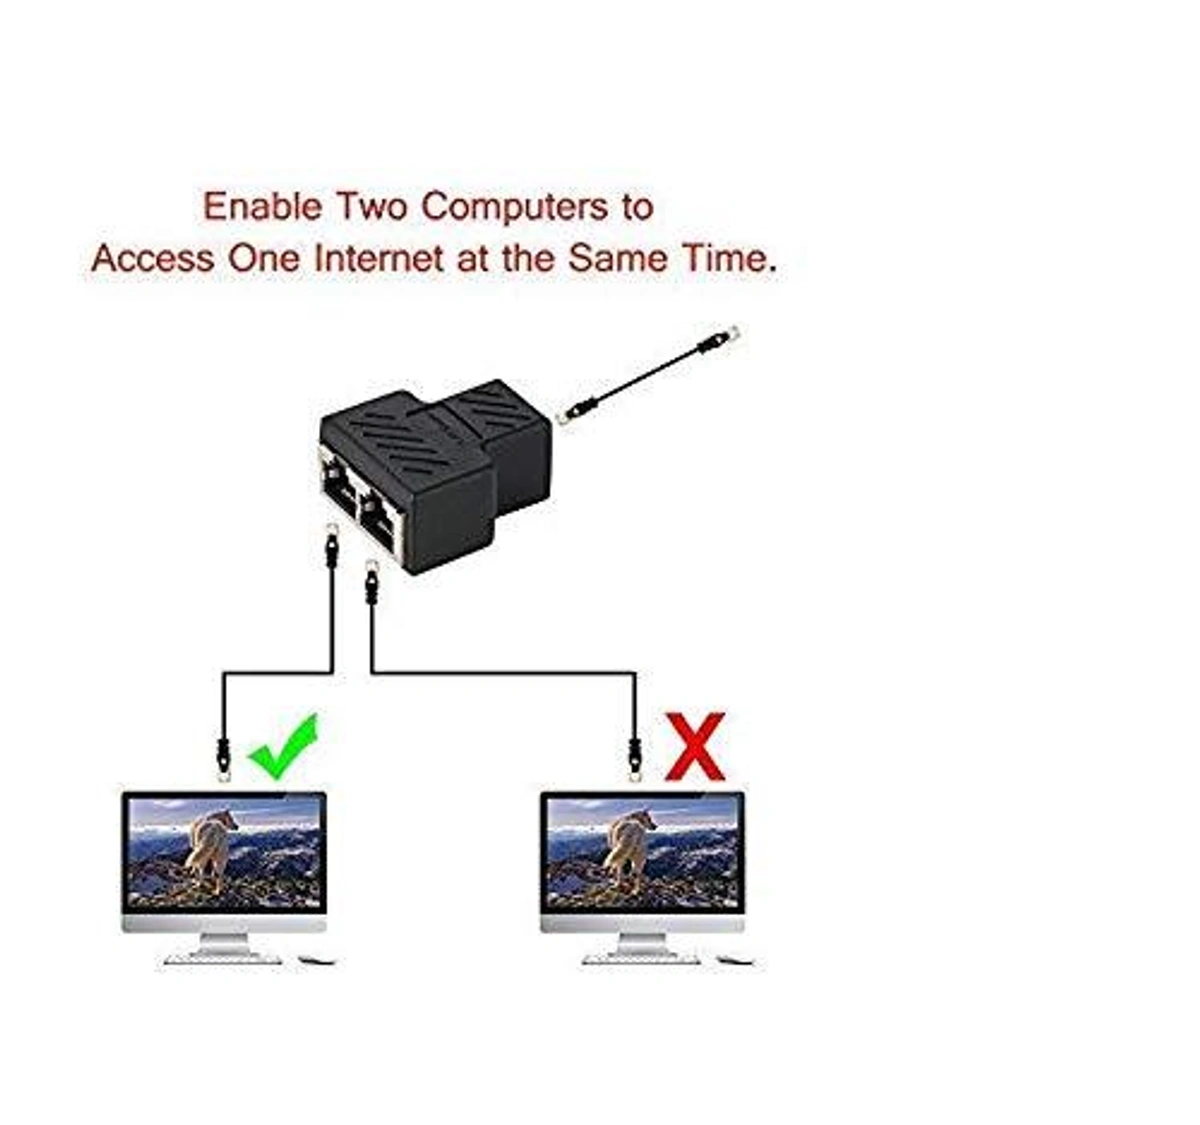 RJ45 Ethernet Splitter Cable, RJ45 1 to 2 LAN Network Adapter Ethernet  Splitter Cable Male to Female Fit for Cat5, Cat5e, Cat6, Cat7 LAN Ethernet